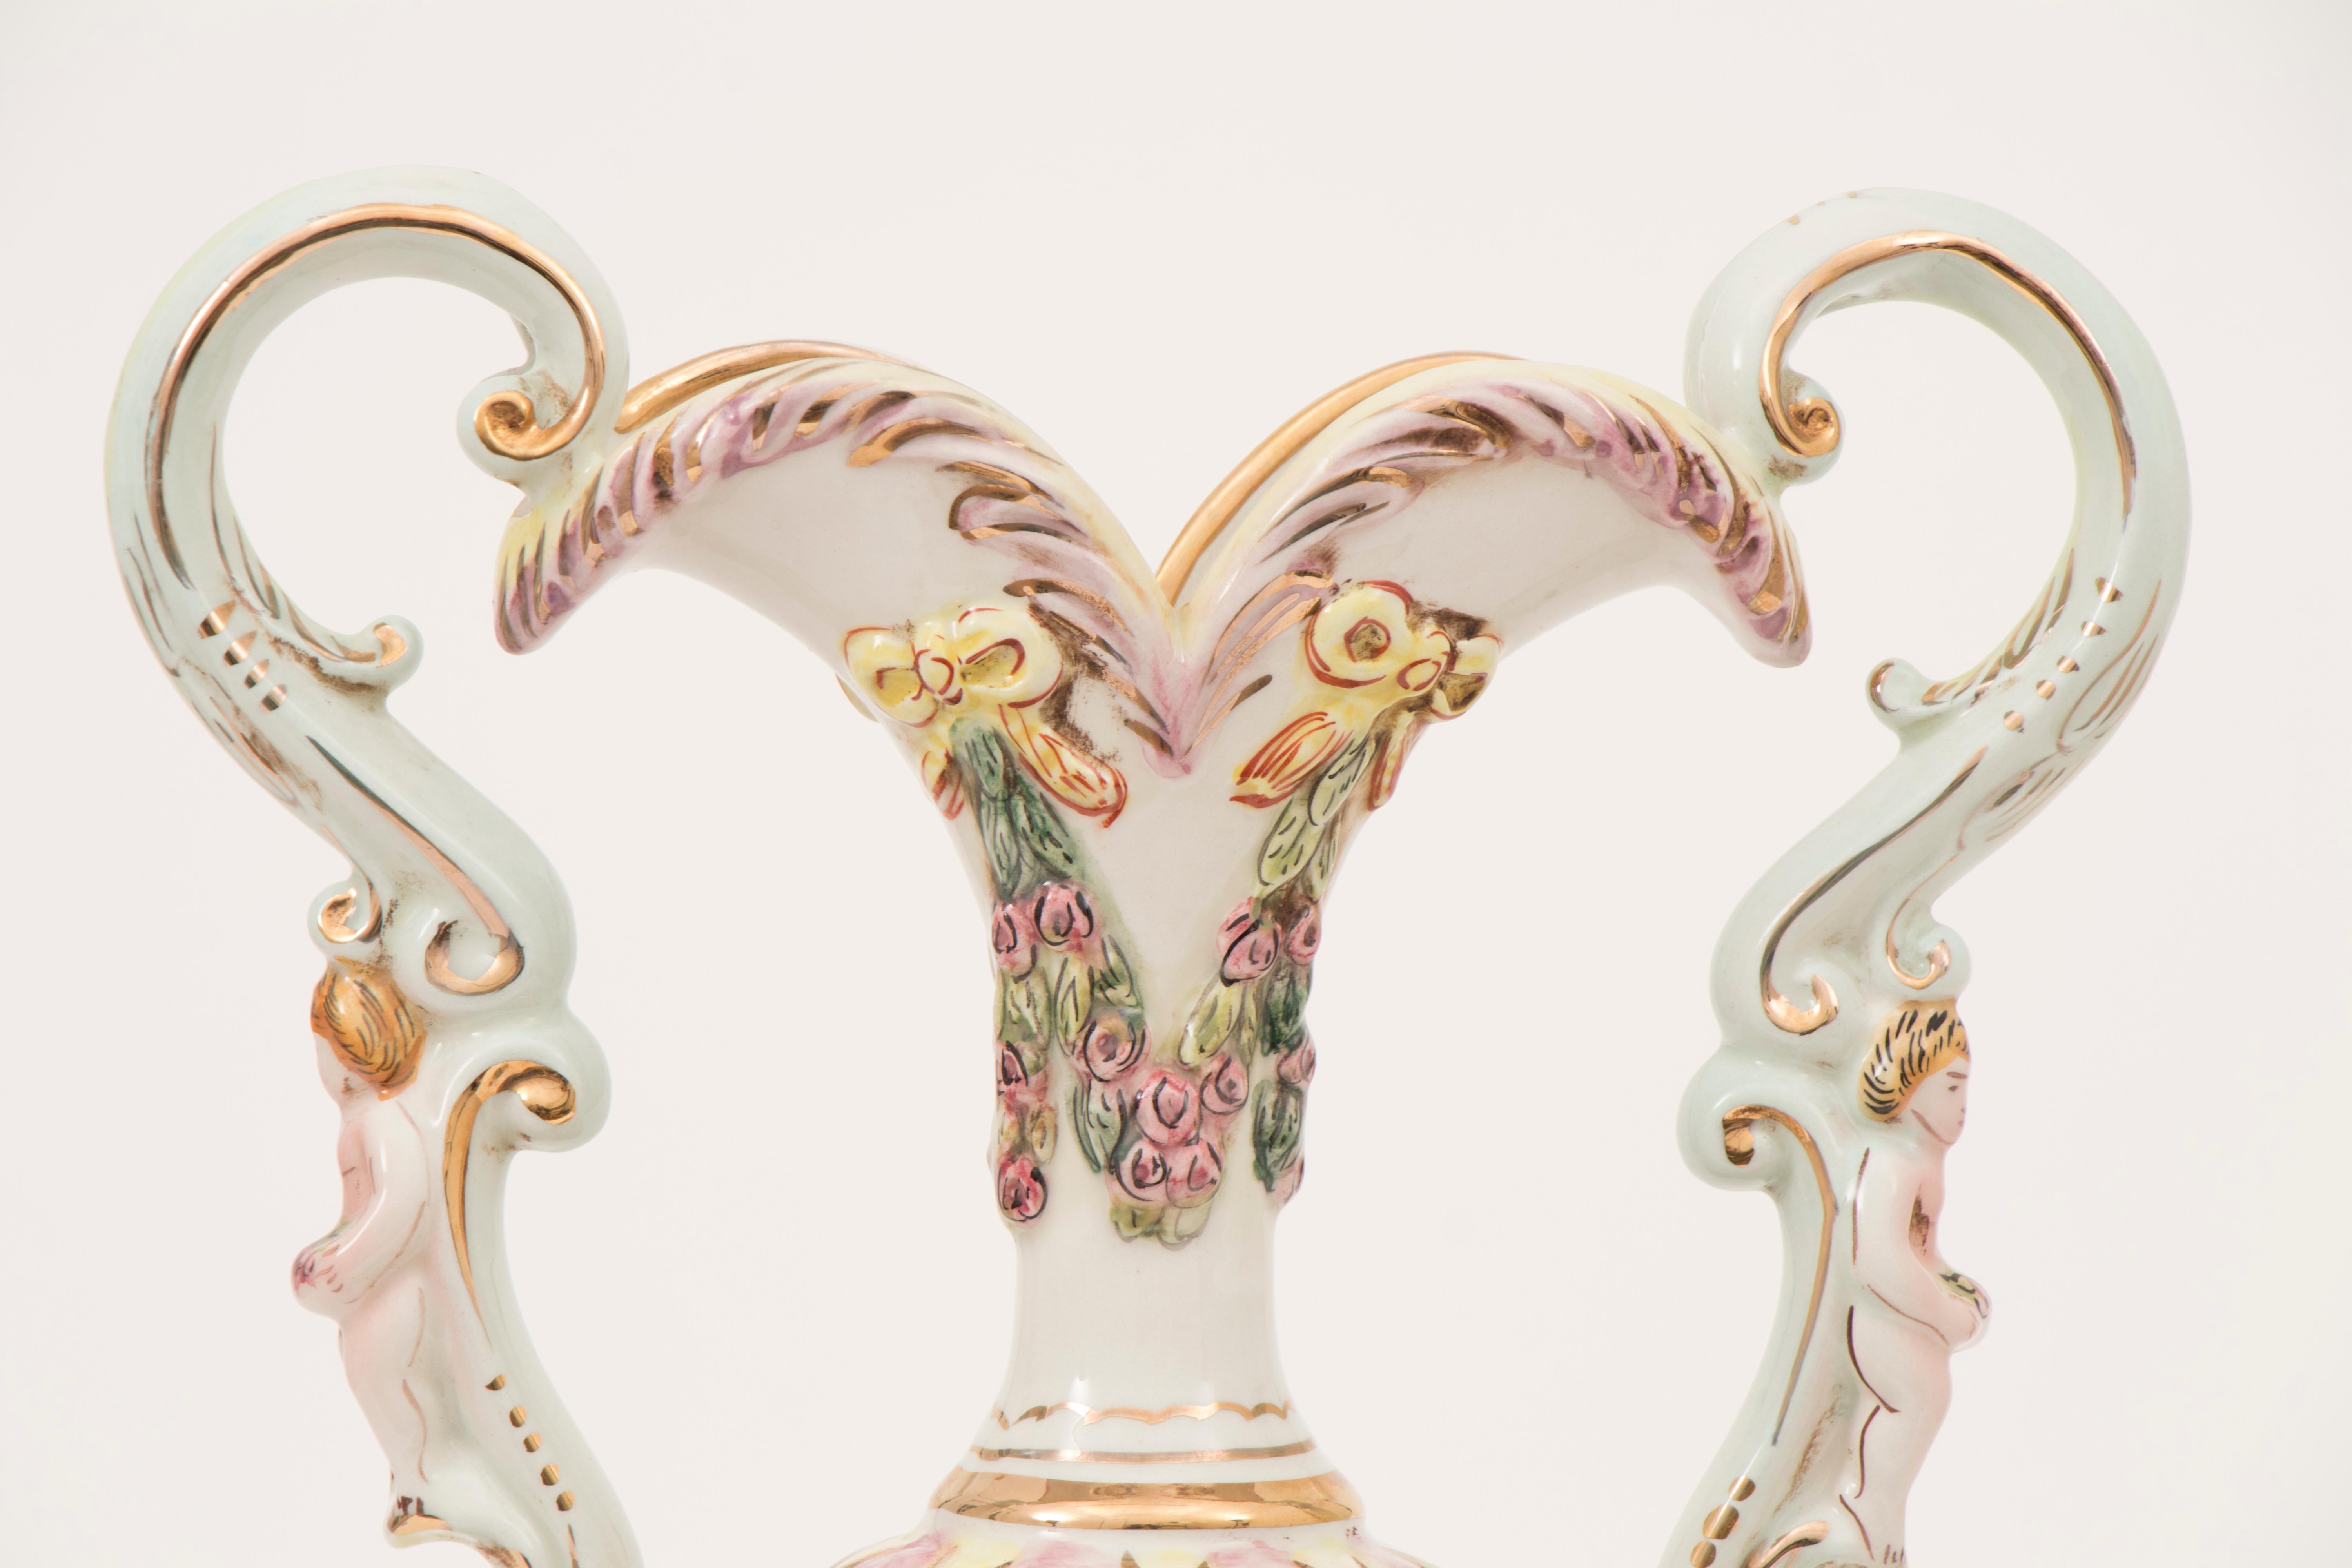 Grande urne à deux anses en porcelaine italienne Capodimonte des années 1950 avec un chérubin sur chaque anse ornée. L'urne présente une scène de jardin mythologique colorée avec des chérubins:: des hommes et des femmes:: des enfants et des meubles